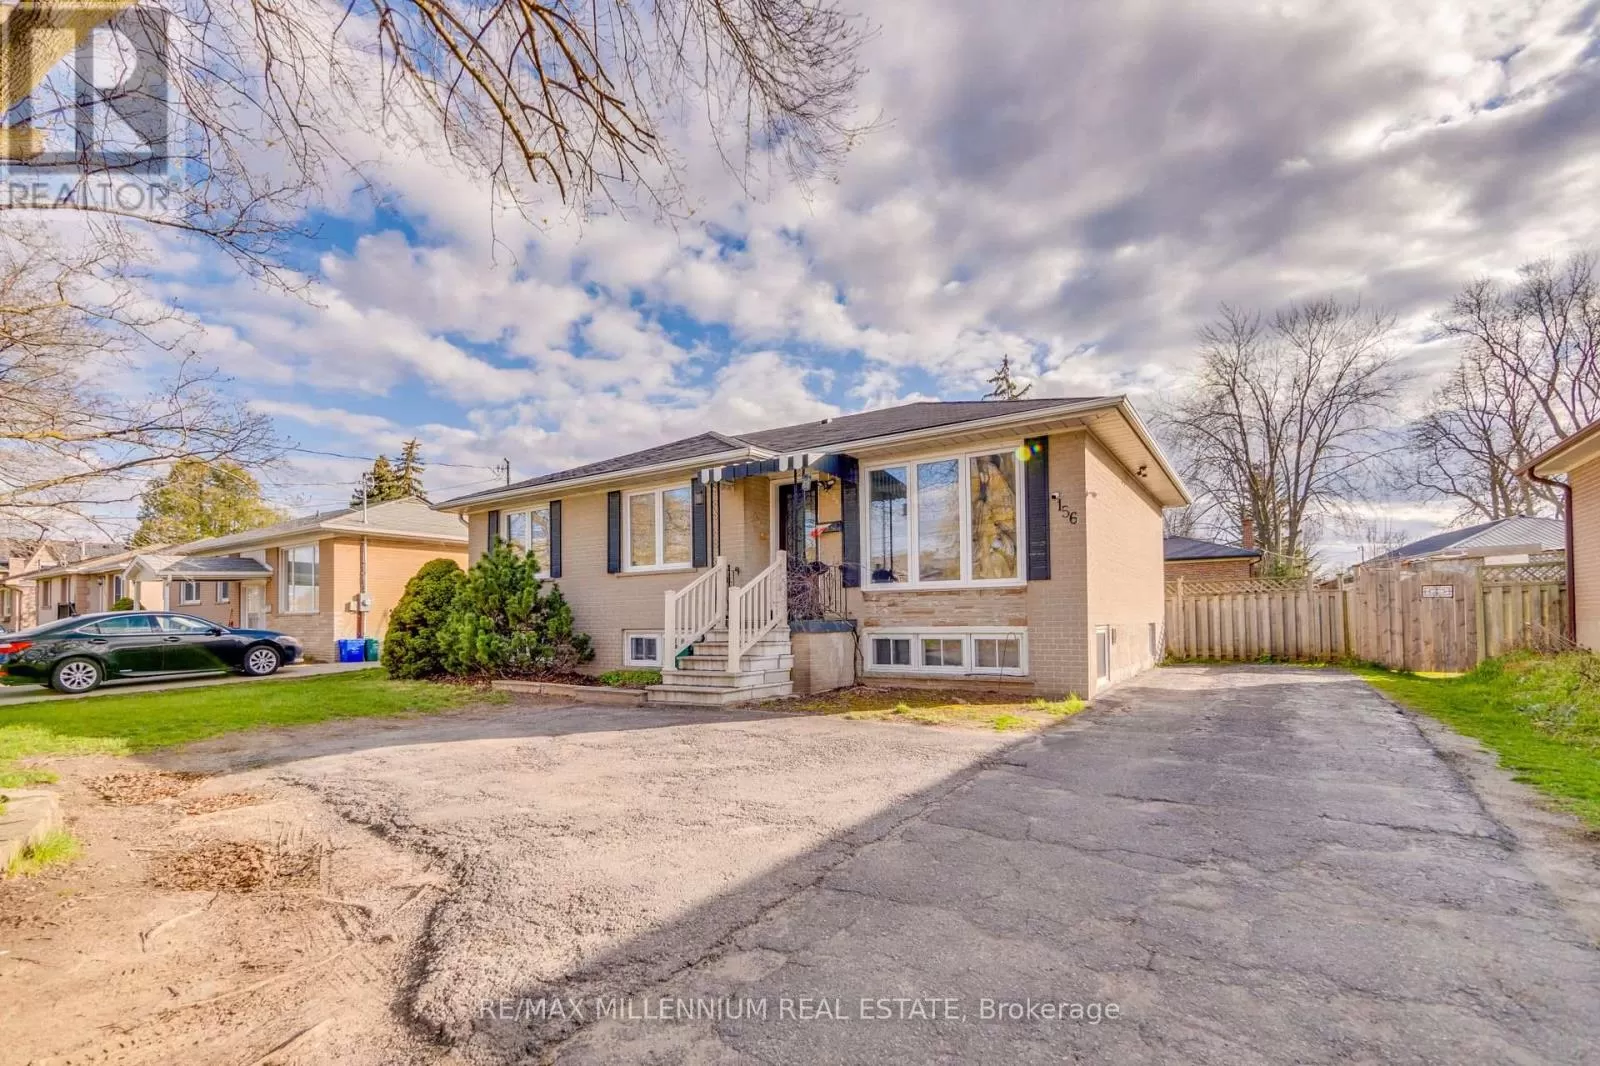 House for rent: 156 Ontario Street S, Milton, Ontario L9T 2M8